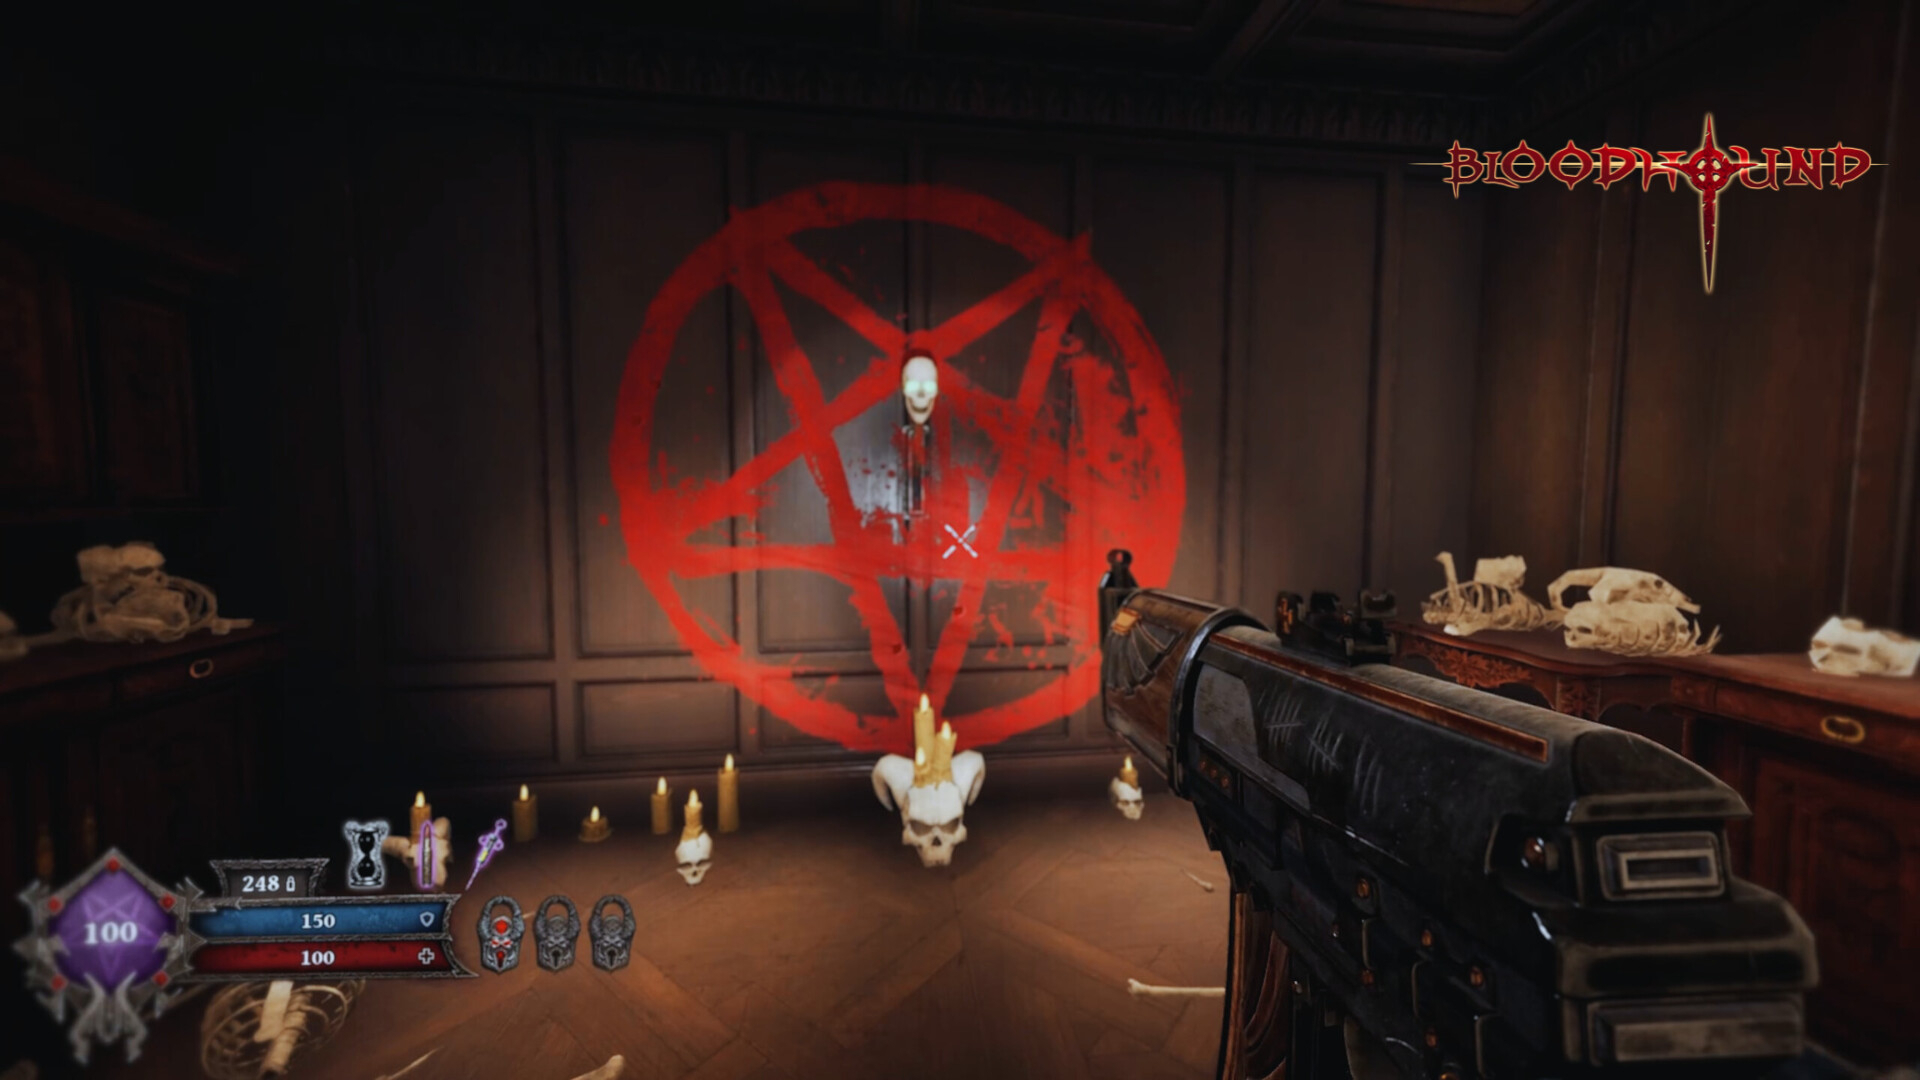 Скриншот из игры Bloodhound под номером 8